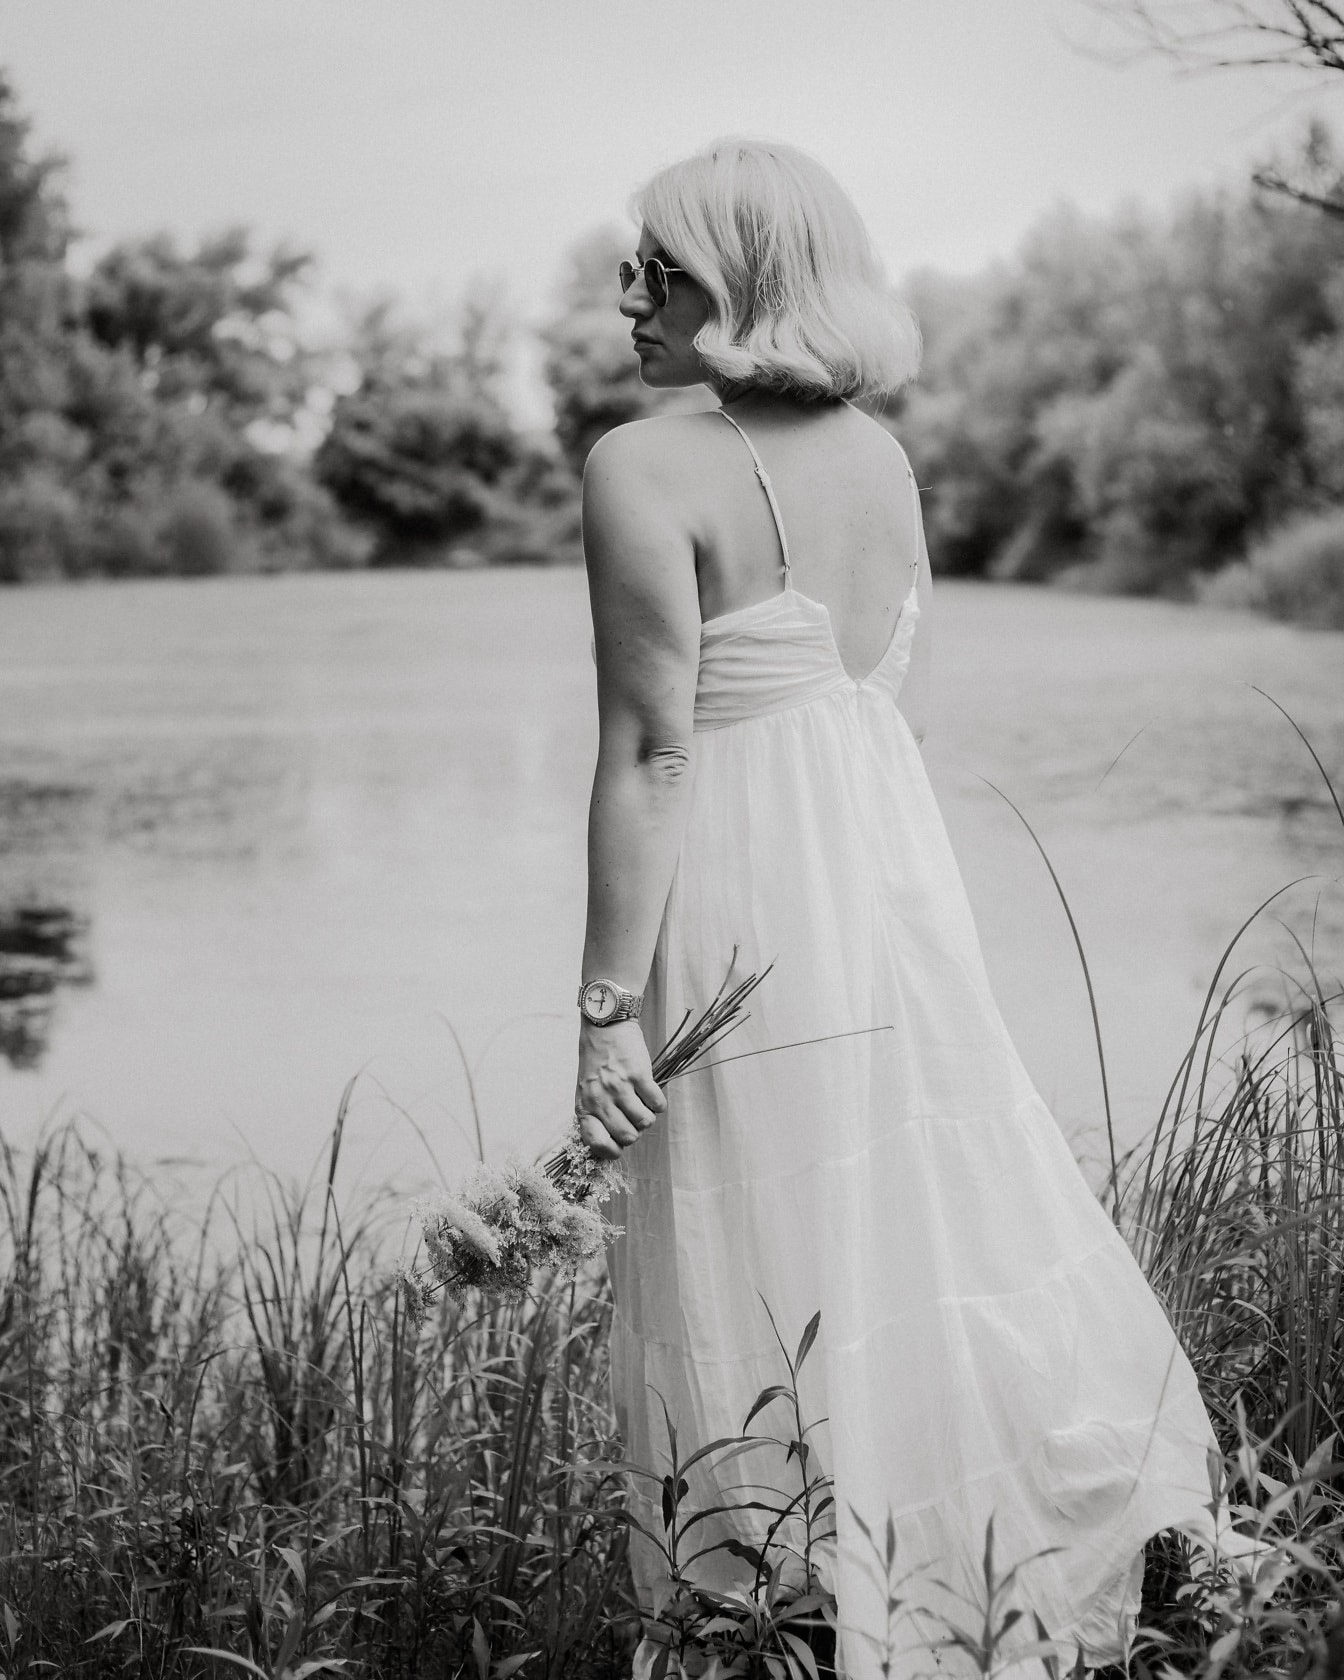 Rubia posando en vestido blanco por retrato monocromo junto al lago